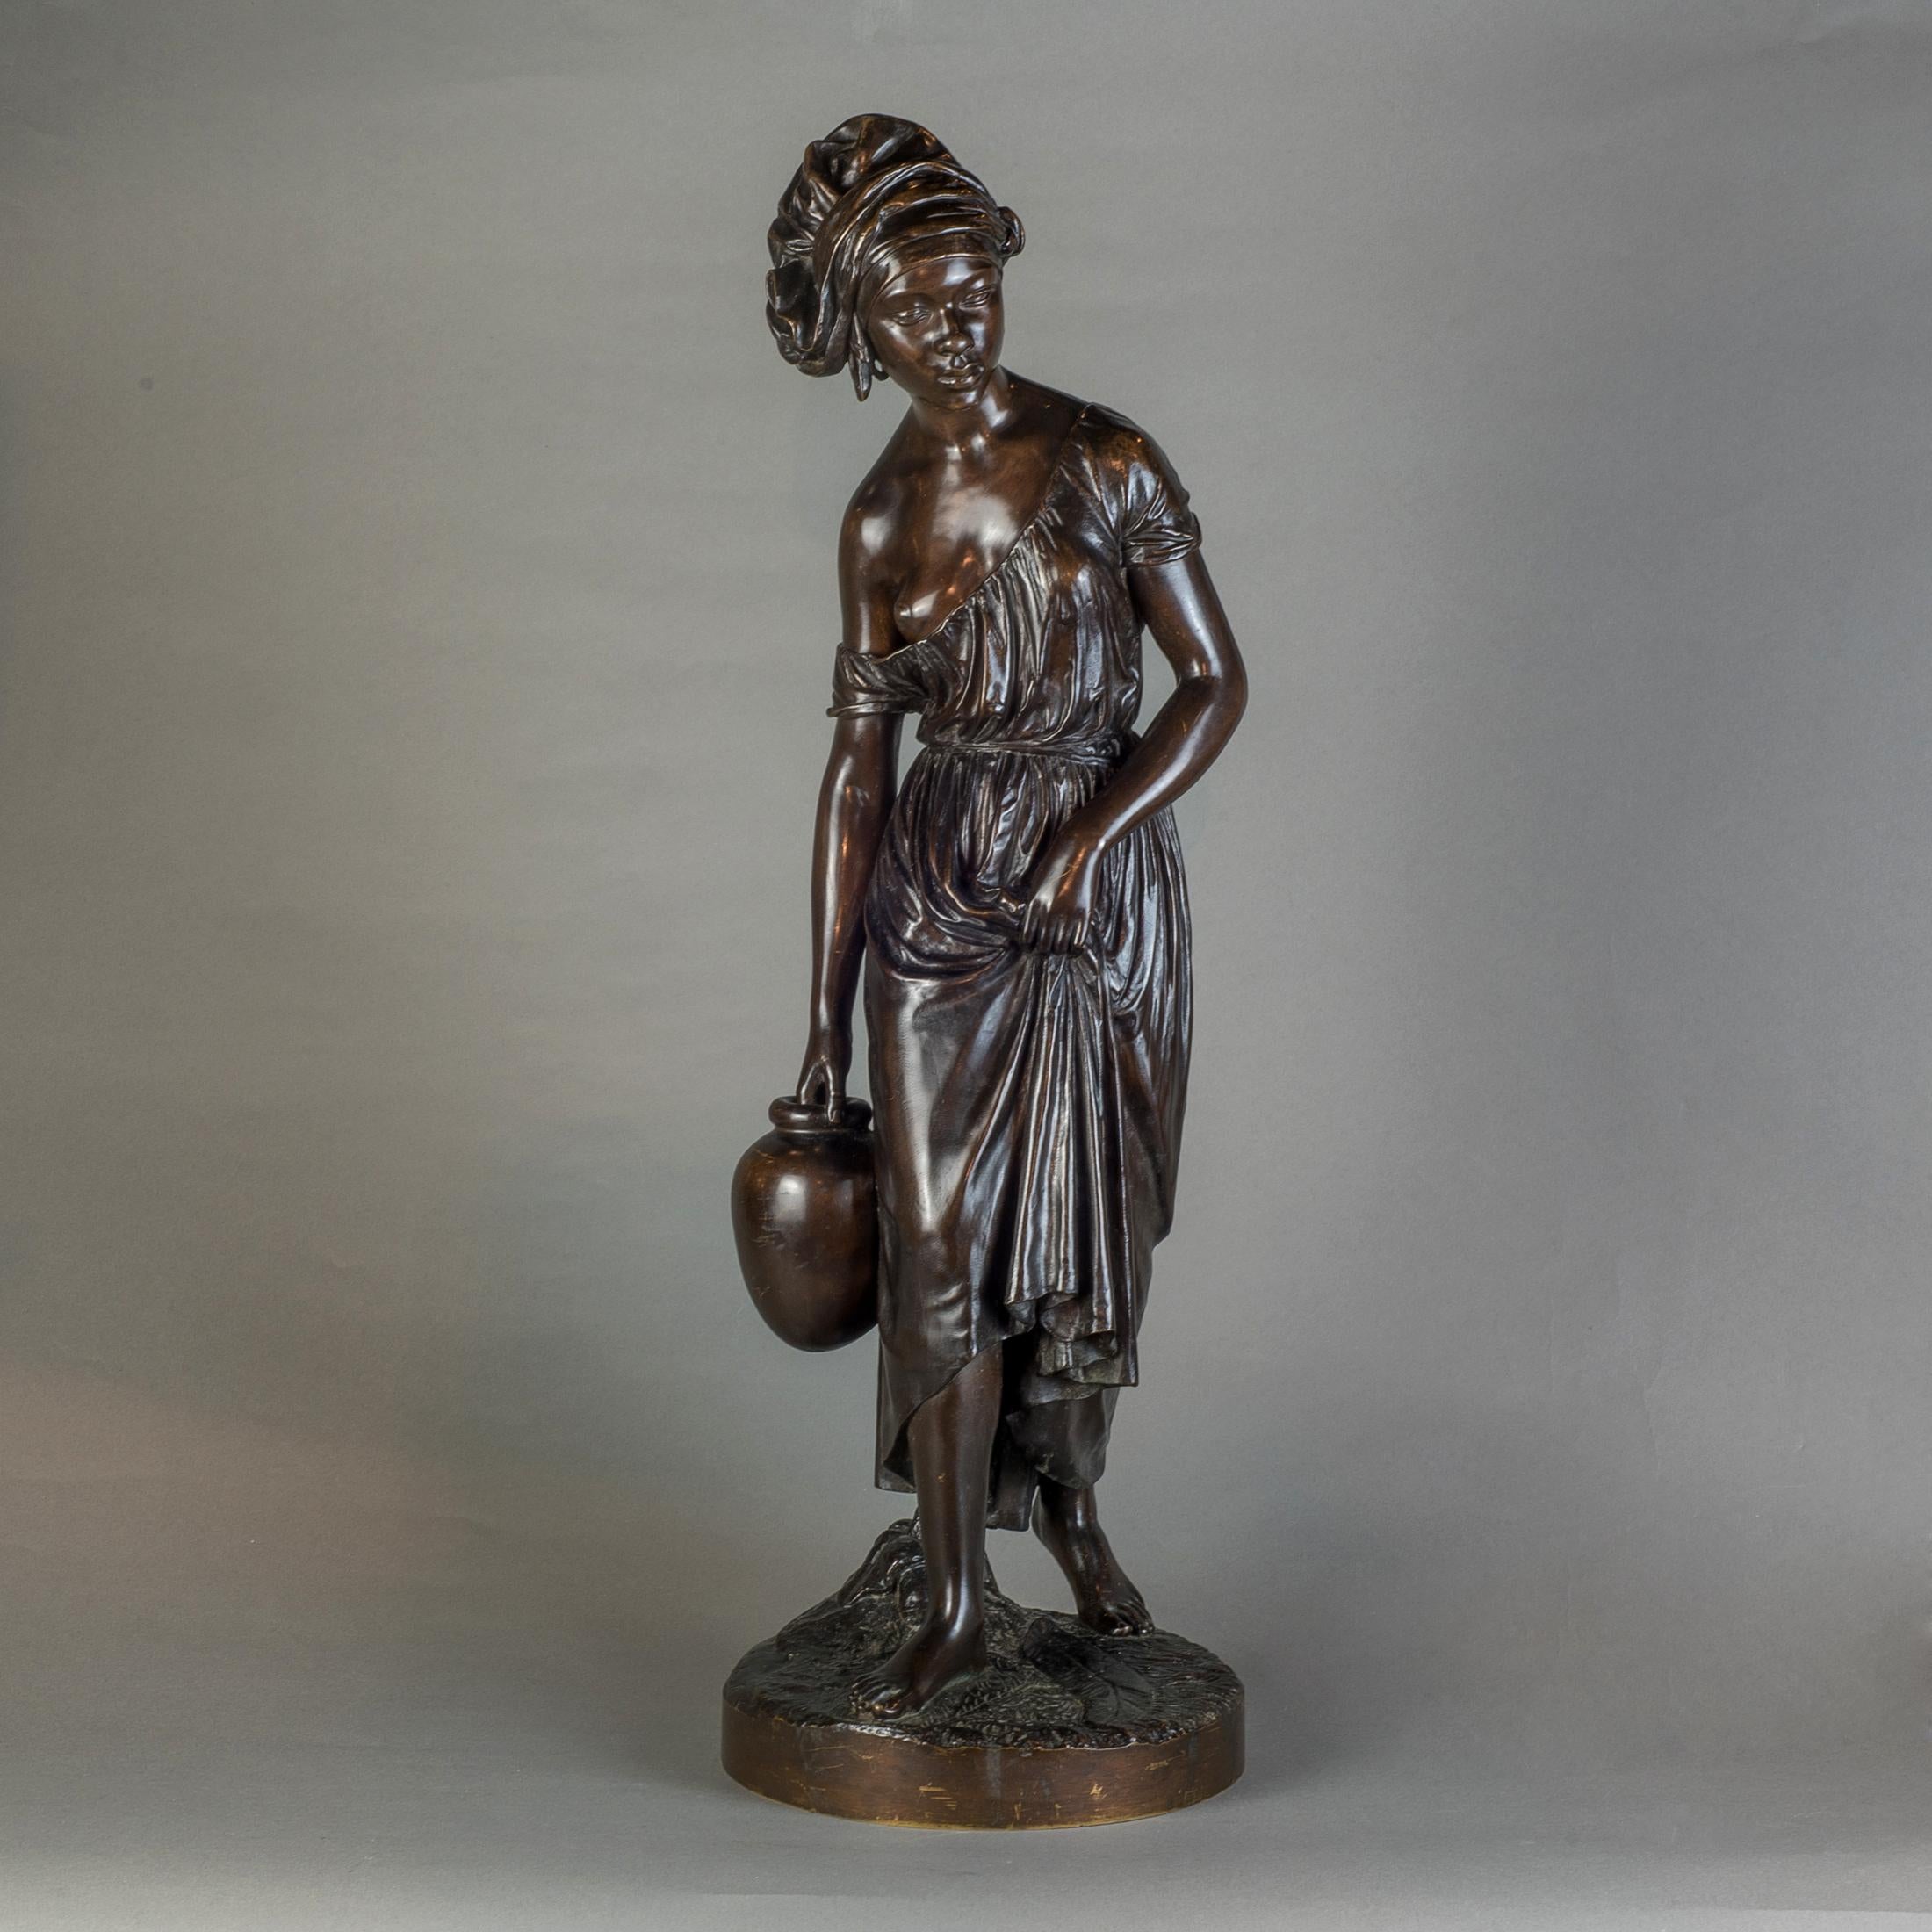 La sculpture française en bronze représente une femme nubienne portant un foulard et transportant de l'eau. La sculpture la montre en mouvement, tenant sa robe, sur le point de poser son pied droit devant. Signé par l'artiste sur la base 

Artiste